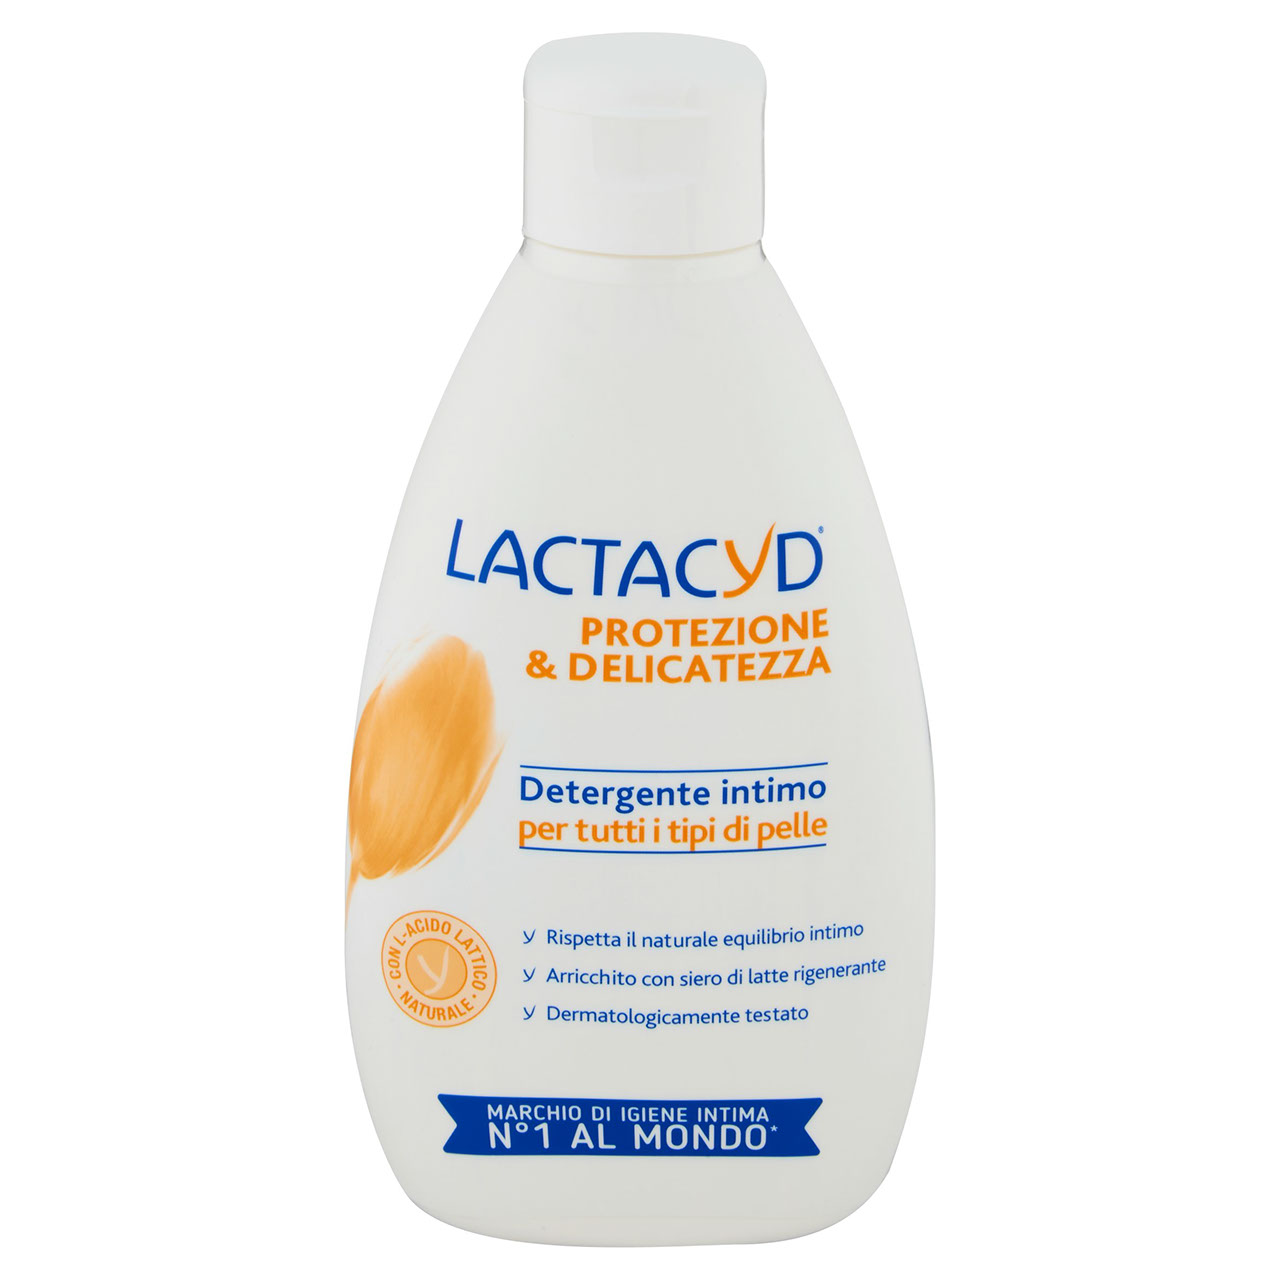 Lactacyd Protezione&Delicatezza Detergente intimo